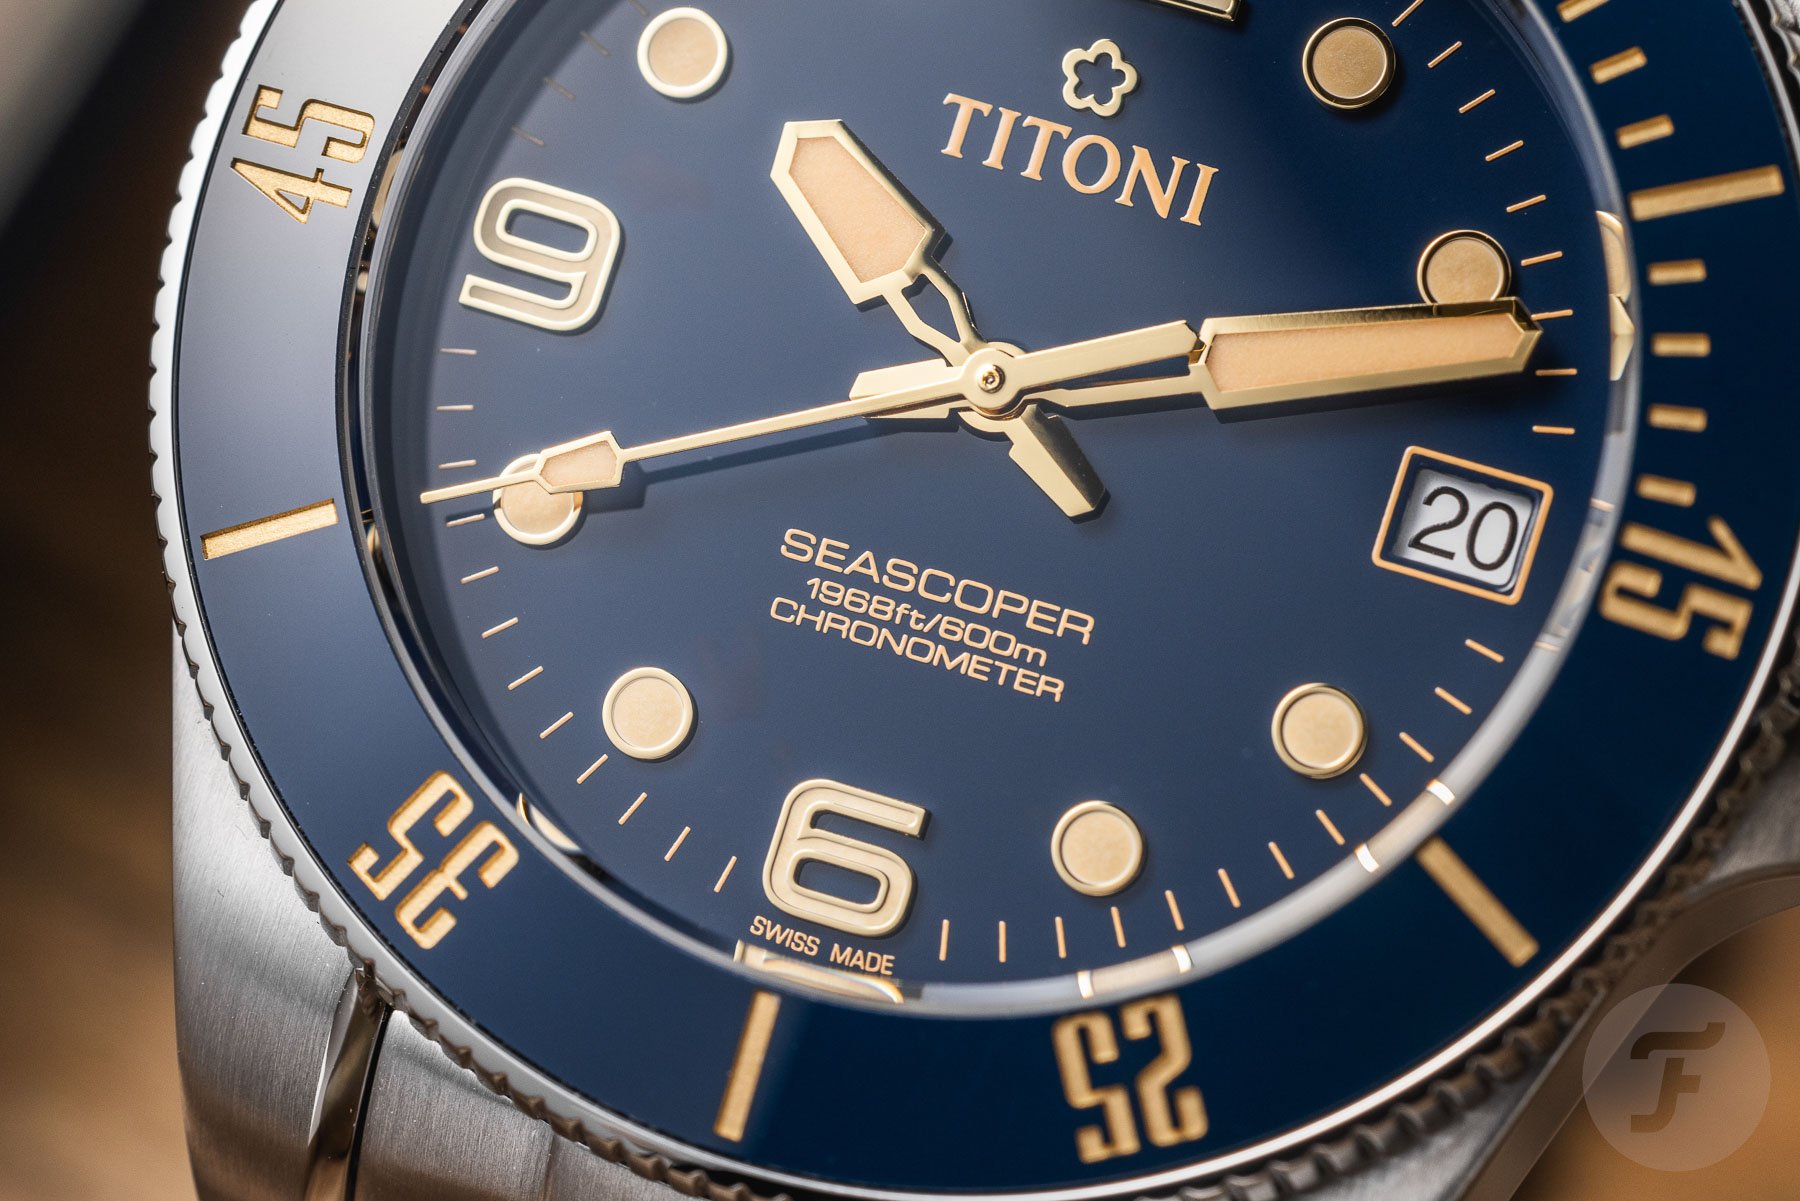 Titoni Seascoper 600 Retro dial close-up